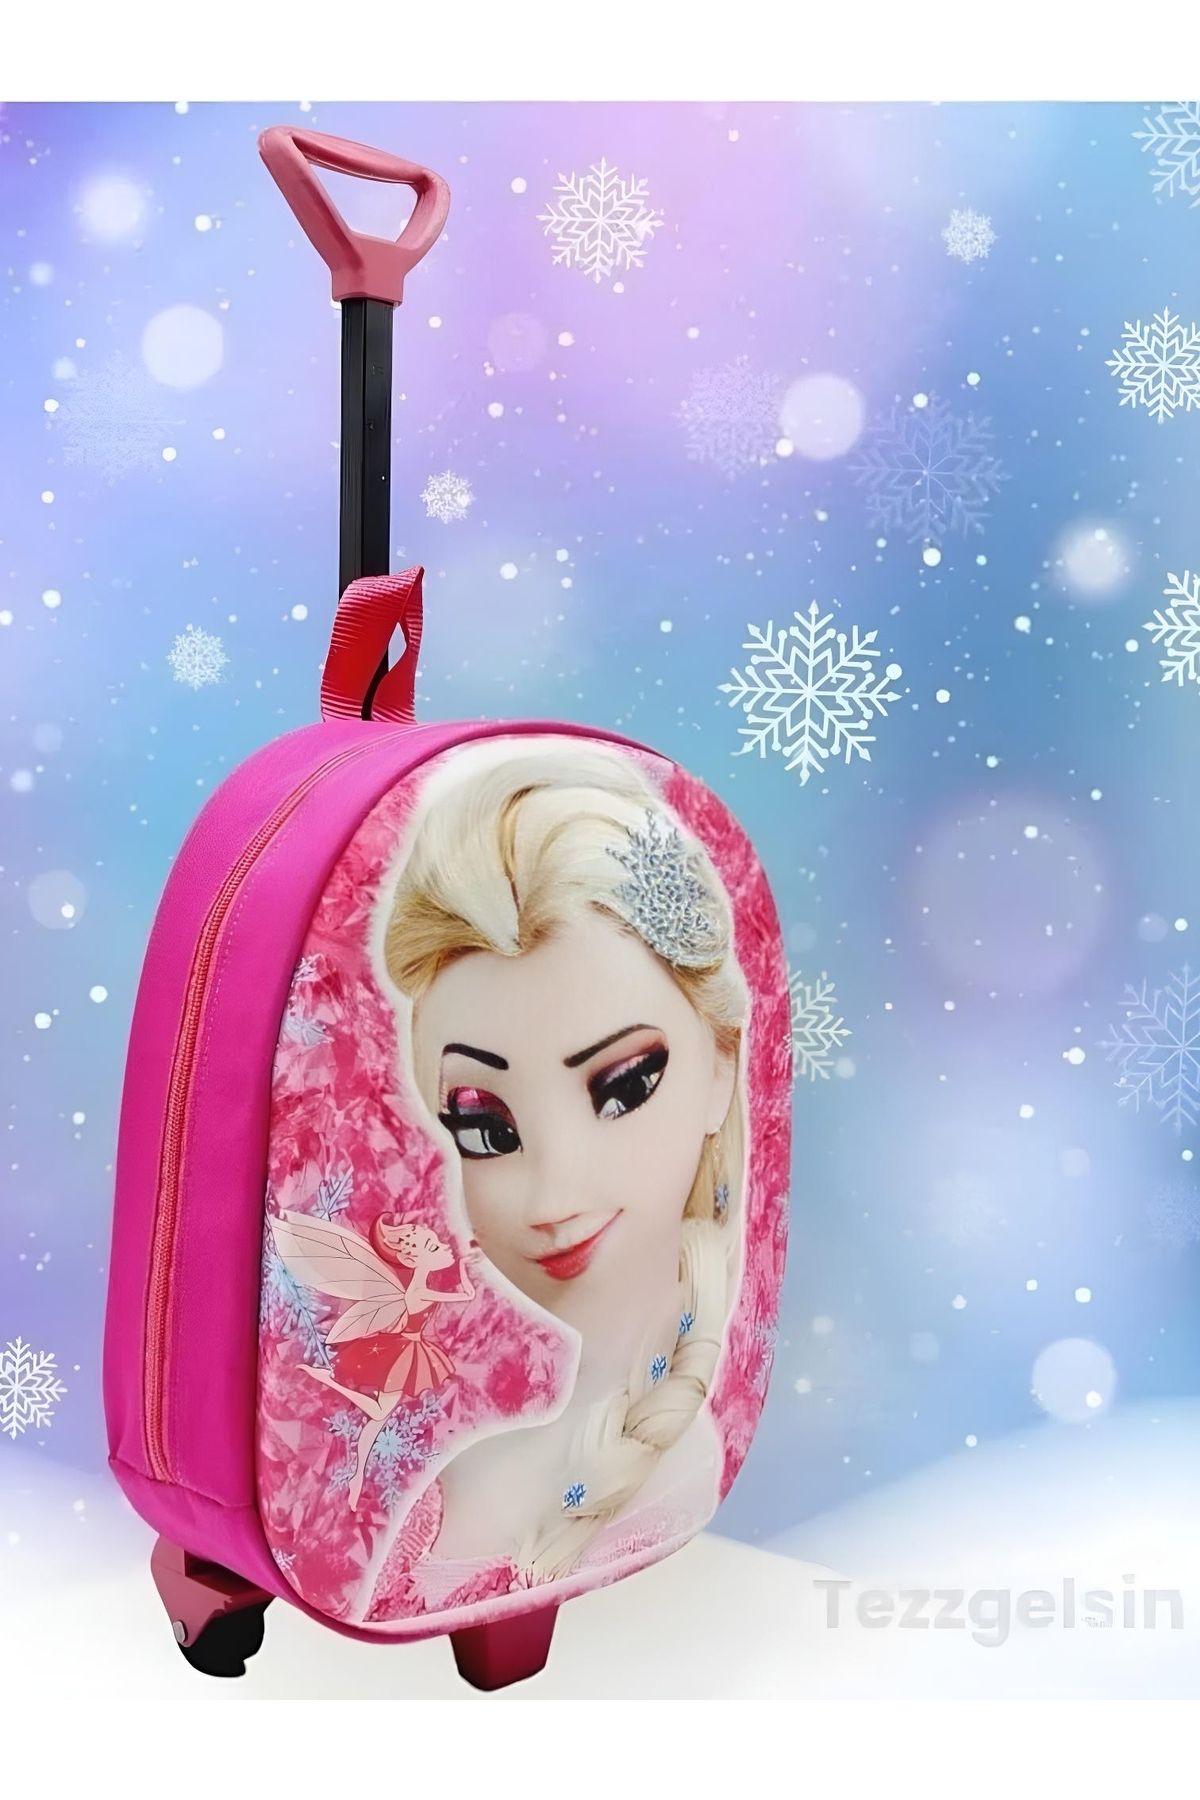 Tezzgelsin Kız Çocuk Anaokulu Çekçekli 3d Baskılı Frozen Elsa Figürlü Tekerli Seyahat Valizi Sırt Çantası